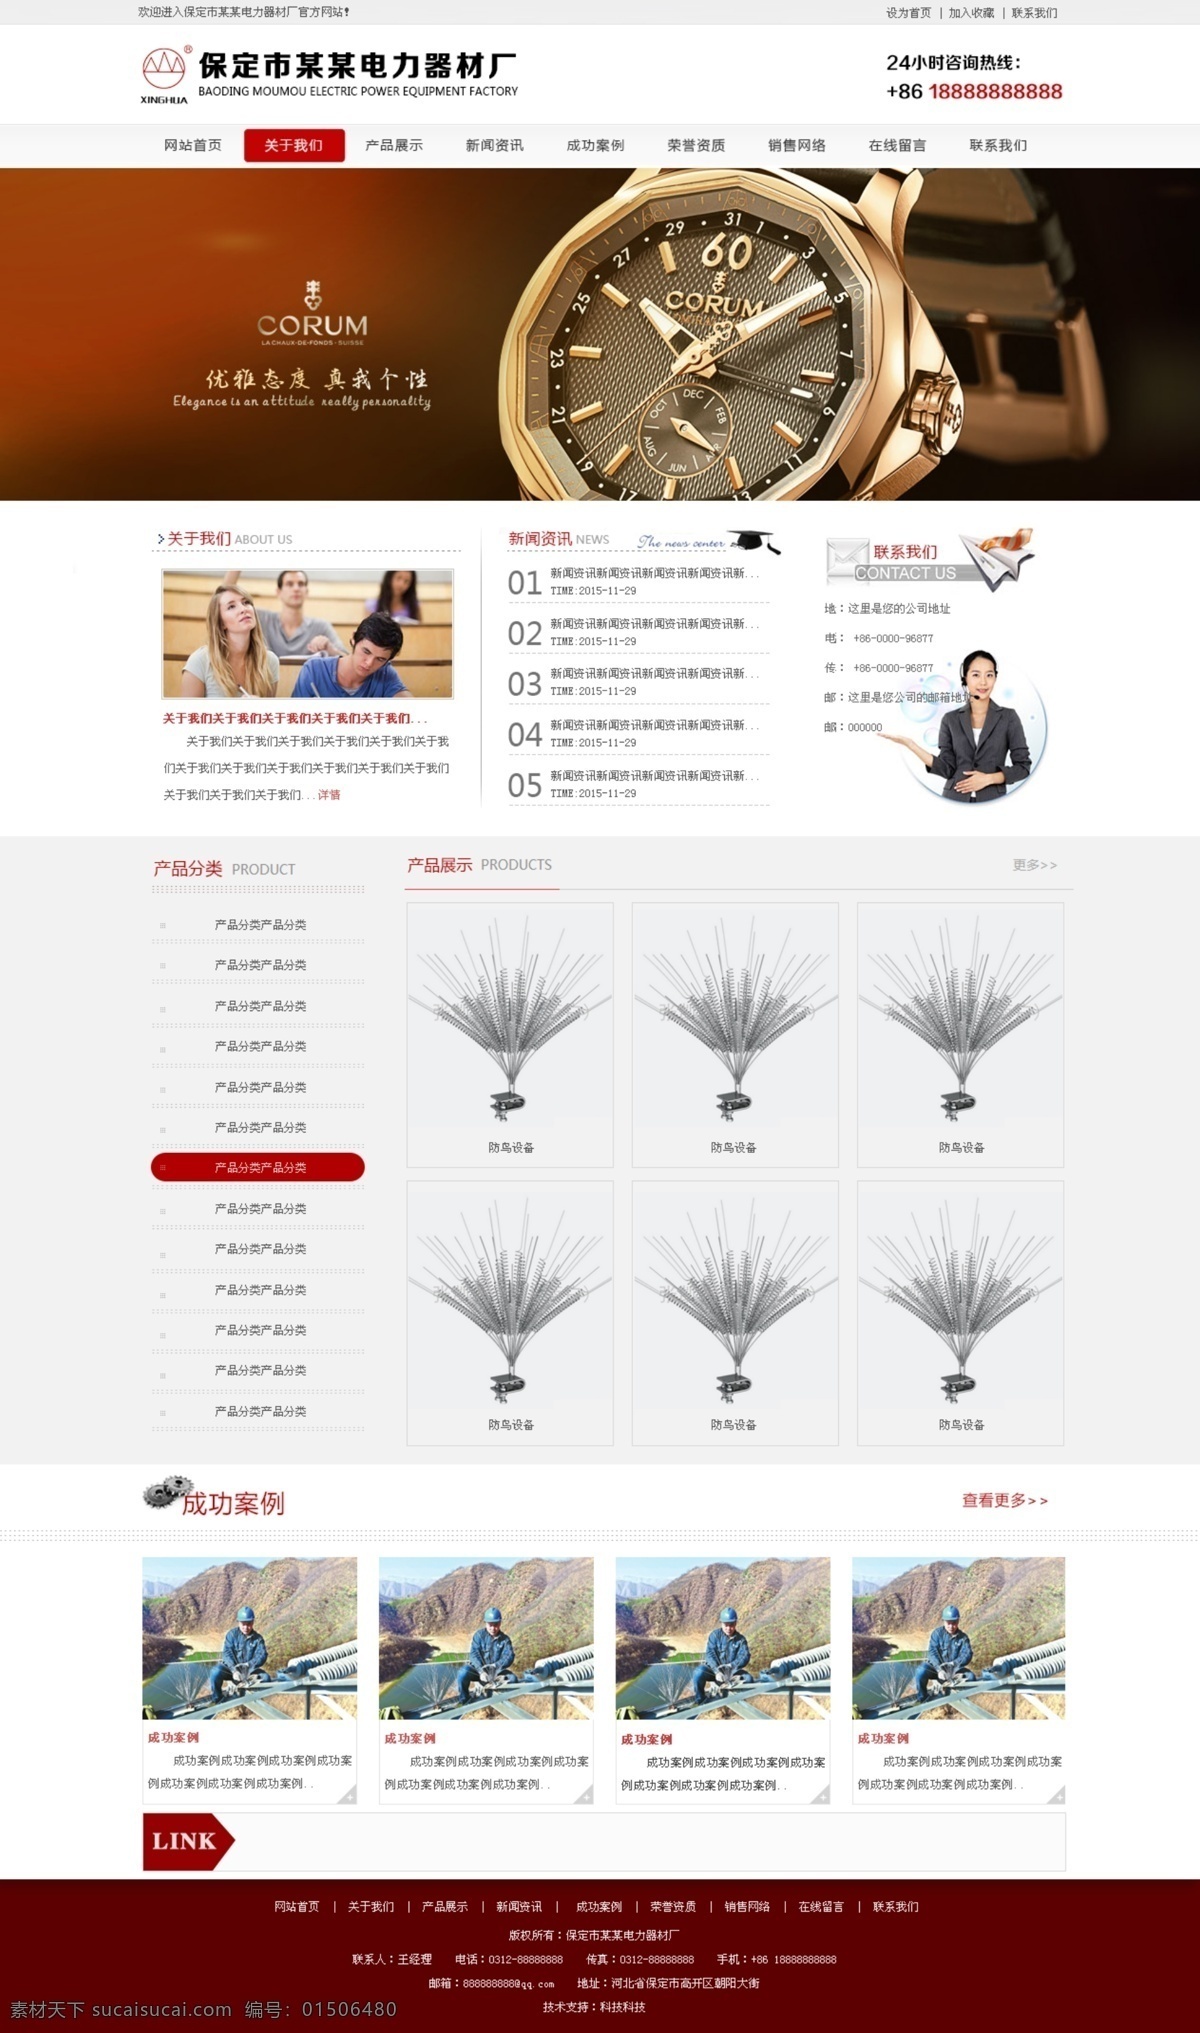 网站模板 网站样式 免费模板 网站架构 免费网站样式 web 界面设计 中文模板